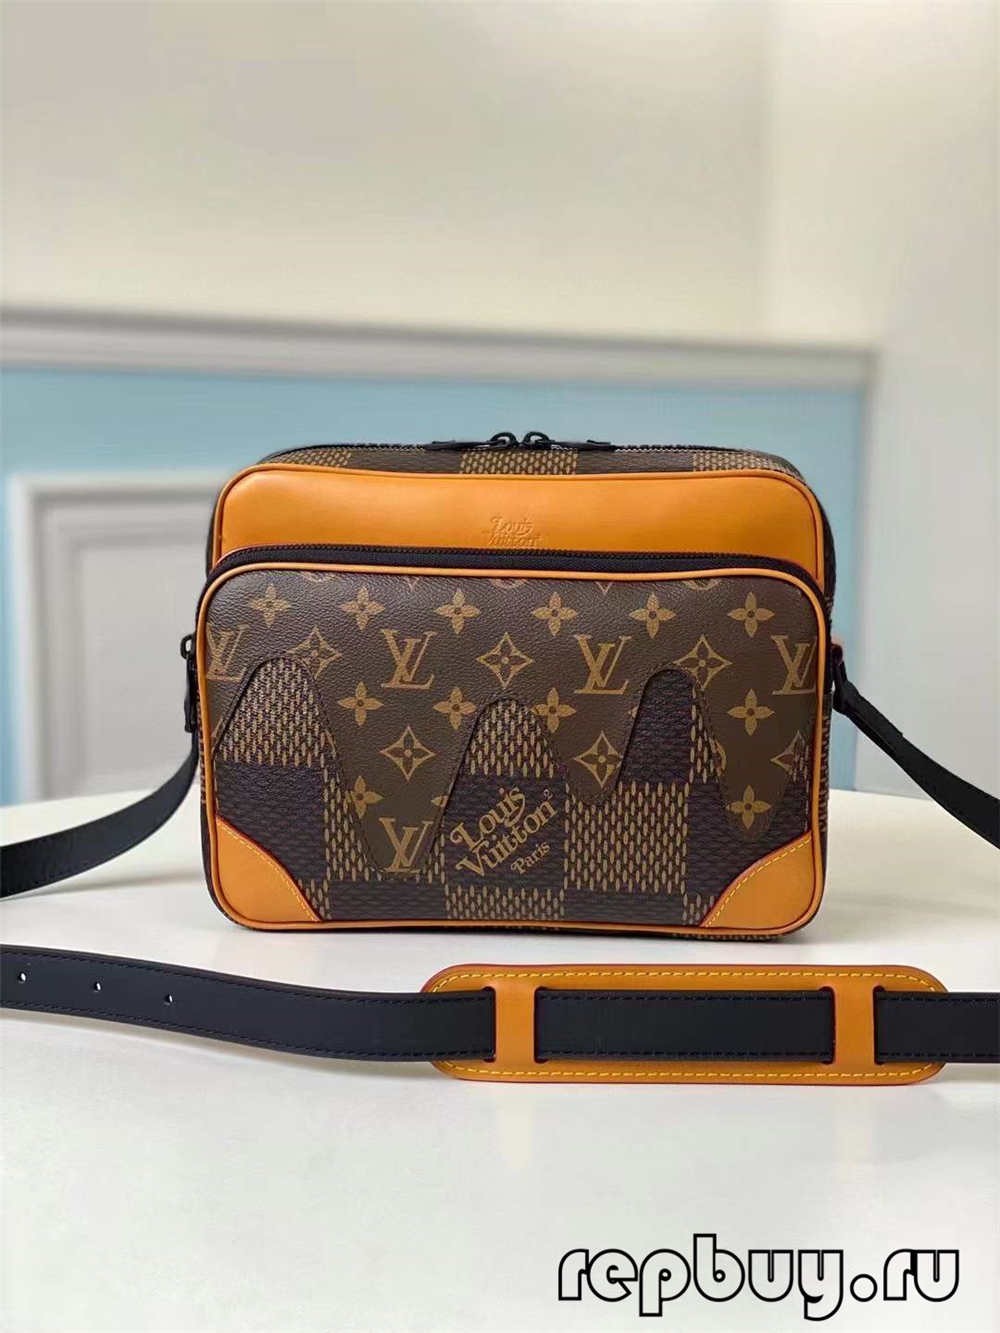 ಲೂಯಿಸ್ ವಿಟಾನ್ N40359 ಉತ್ತಮ ಗುಣಮಟ್ಟದ ಪ್ರತಿಕೃತಿ ಬ್ಯಾಗ್ (2022 ನವೀಕರಿಸಲಾಗಿದೆ)-Best Quality Fake Louis Vuitton Bag Online Store, Replica designer bag ru